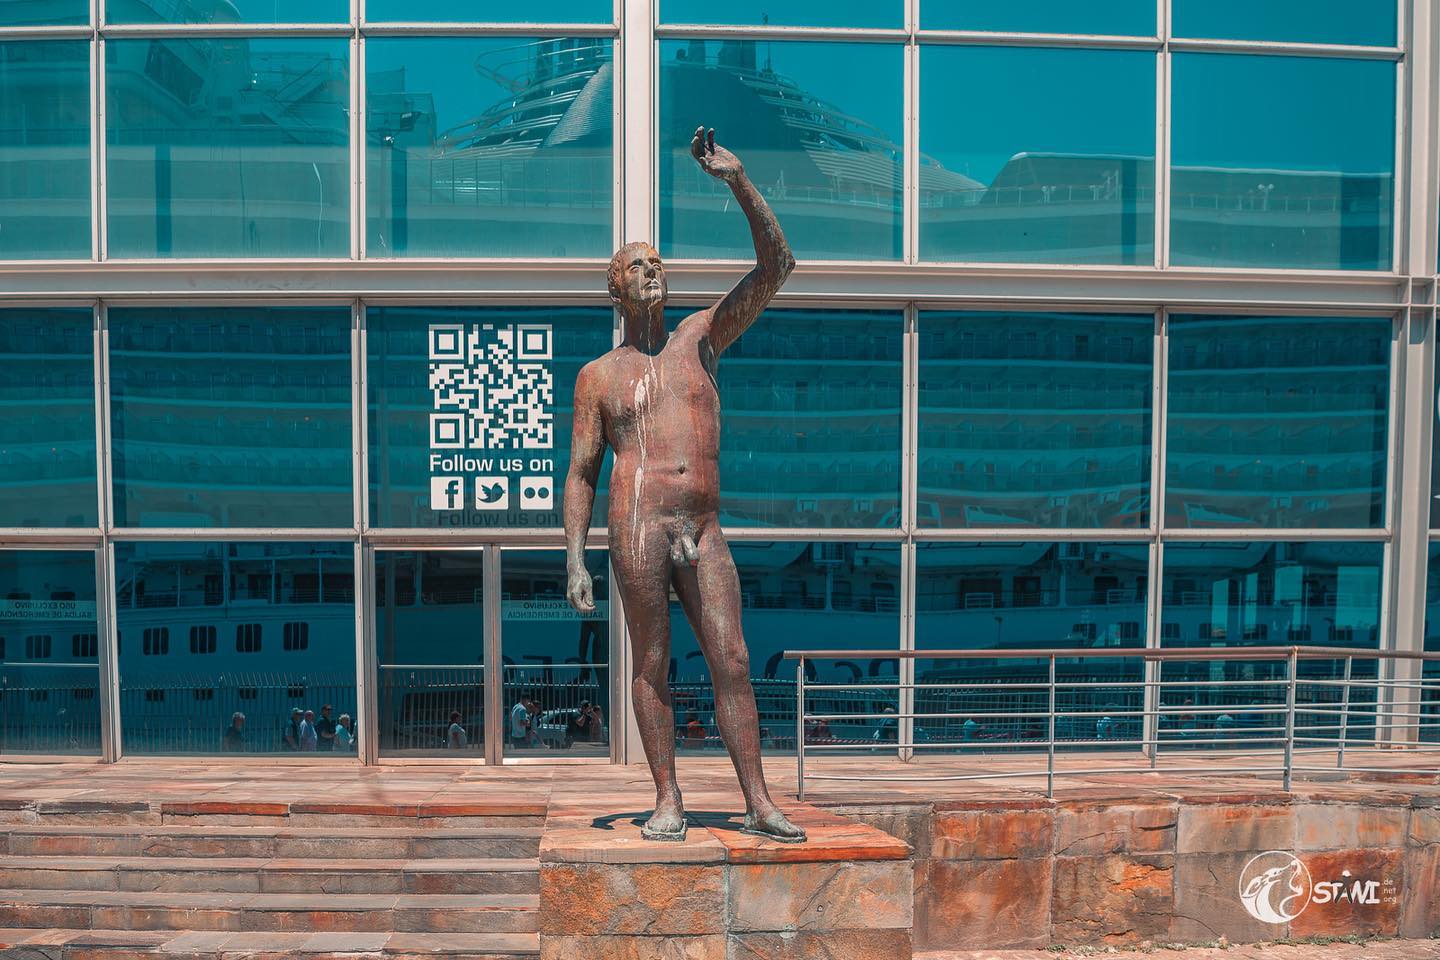 Naked sculpture #nikond750?